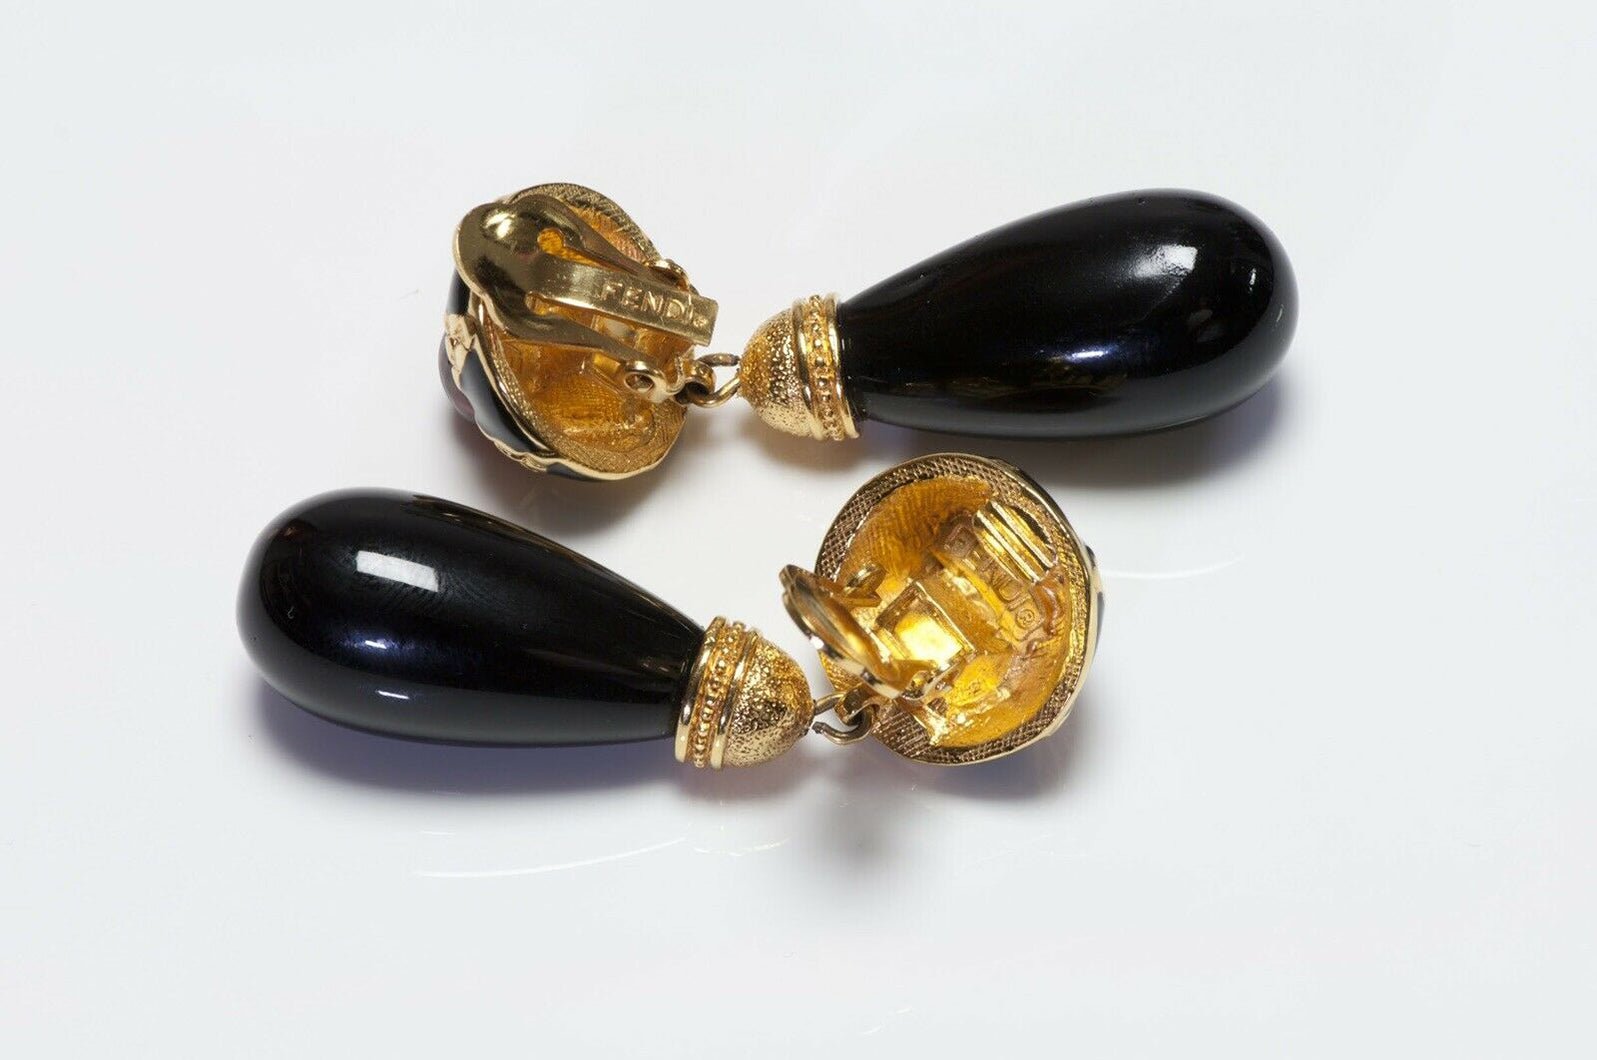 Vintage FENDI Black Enamel Red Glass Drop Earrings